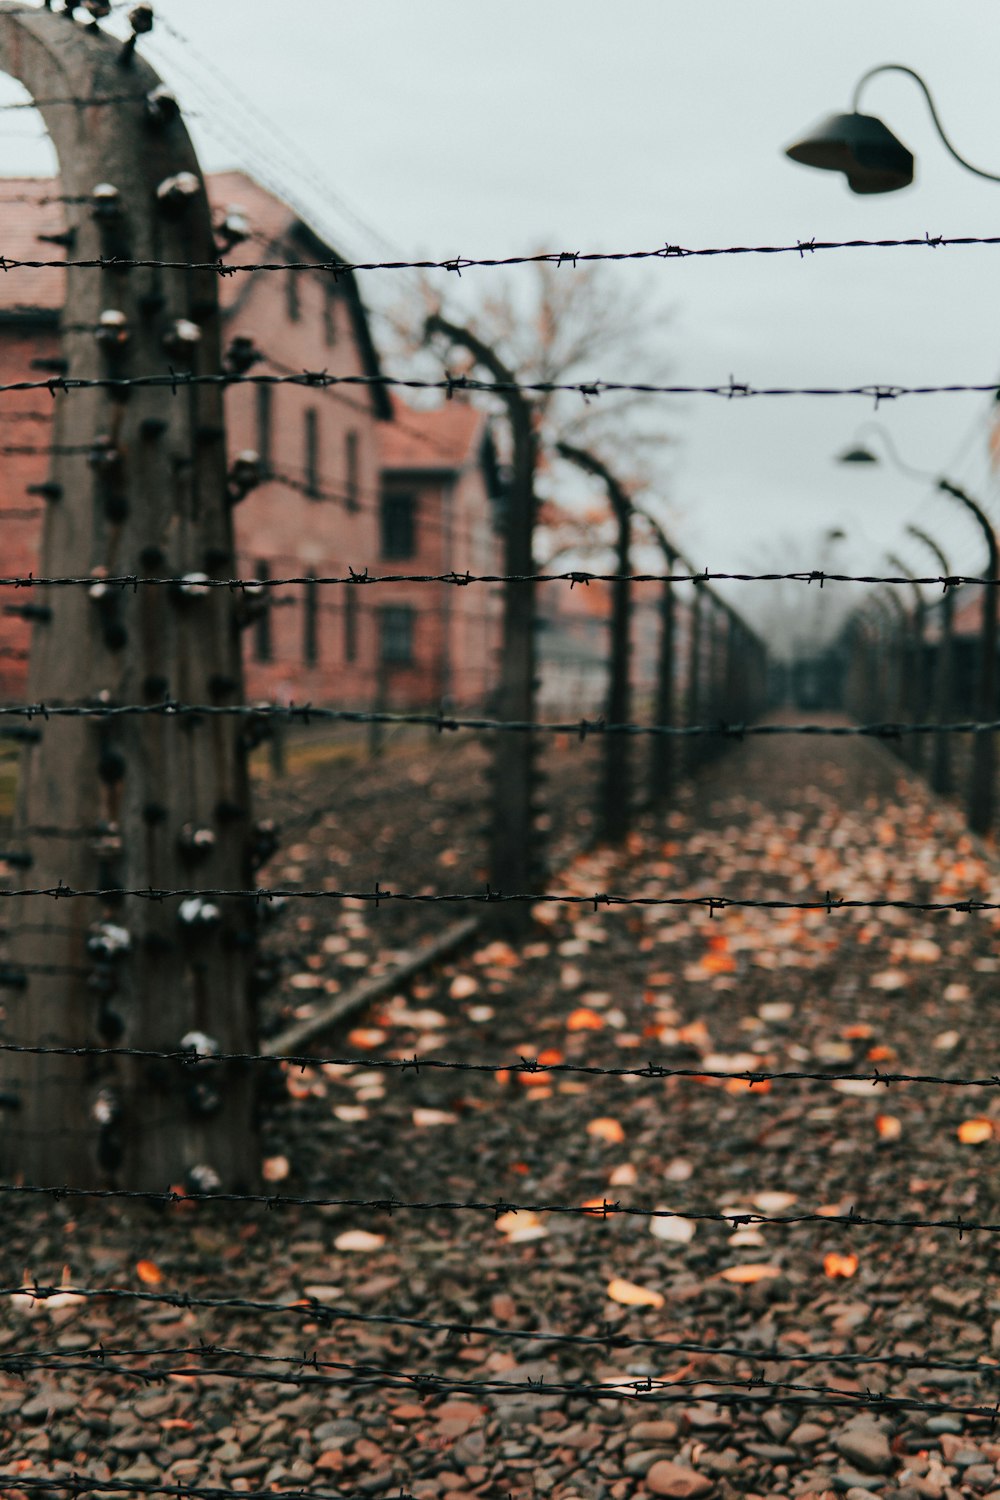 Stacheldrahtzaun in einem Konzentrationslager